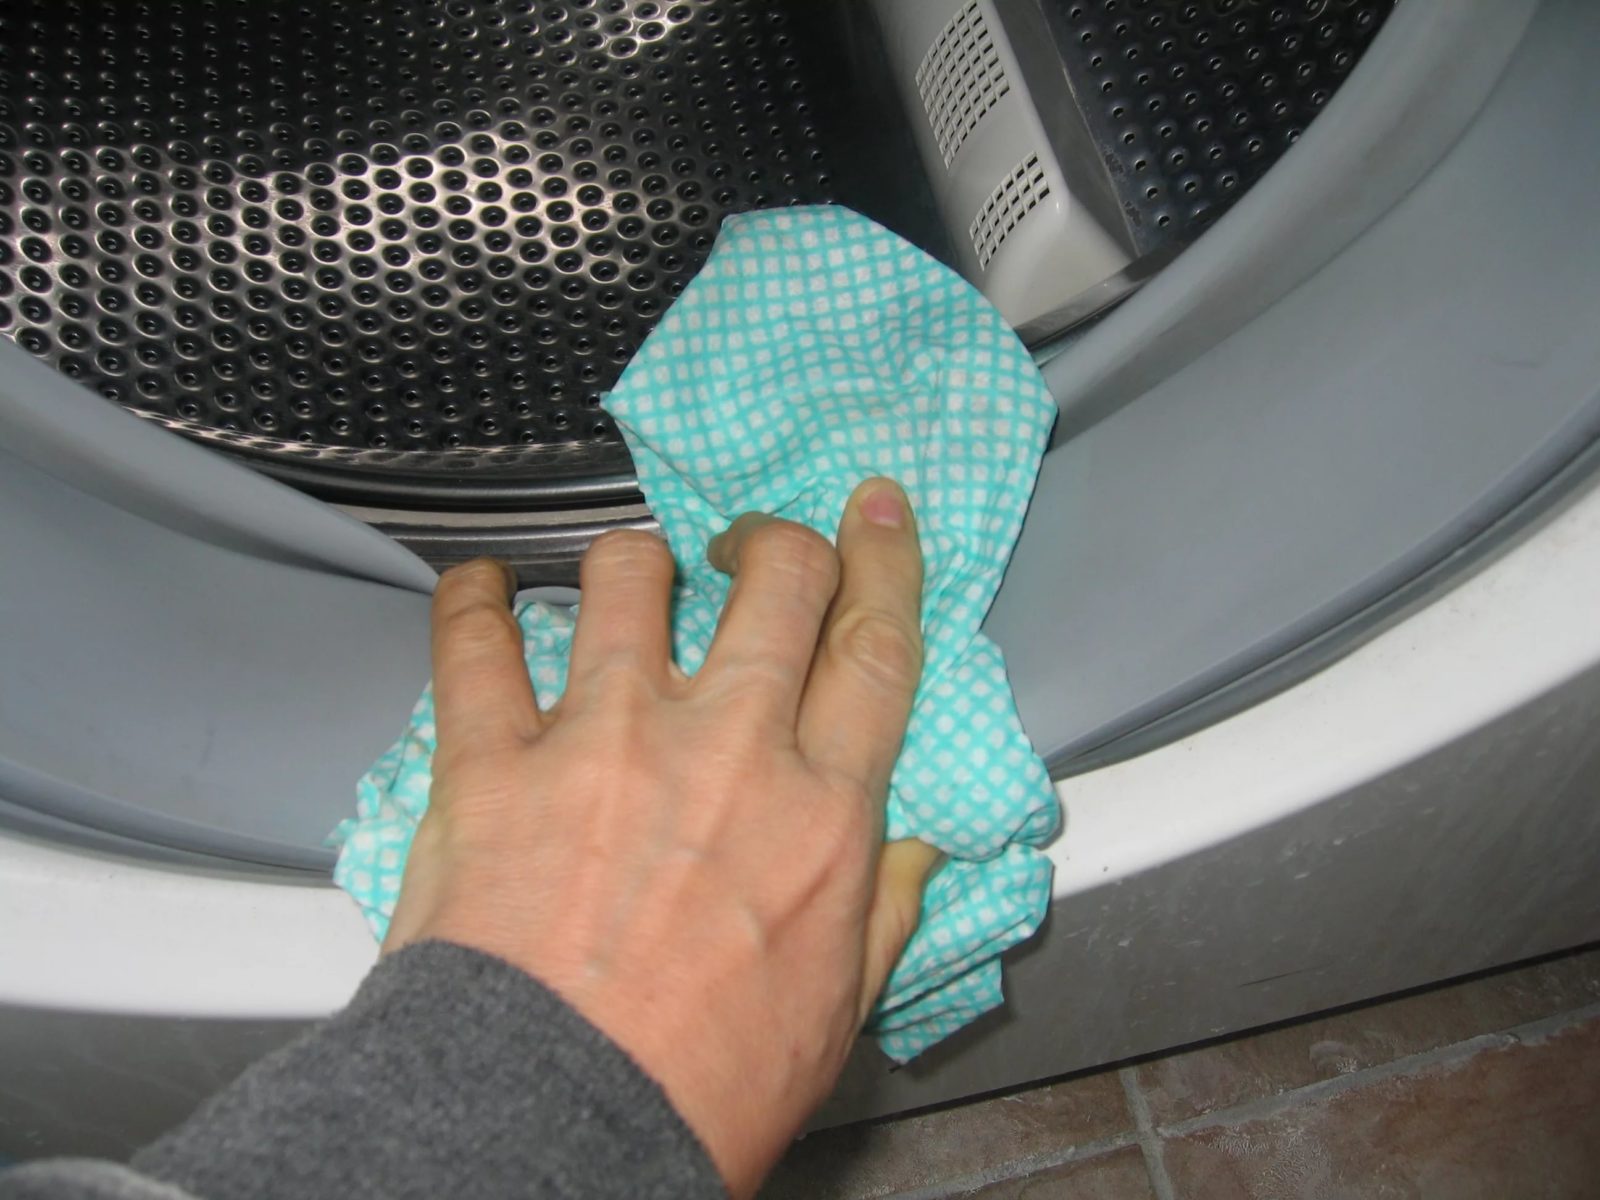 Cách vệ sinh máy giặt bằng giấm